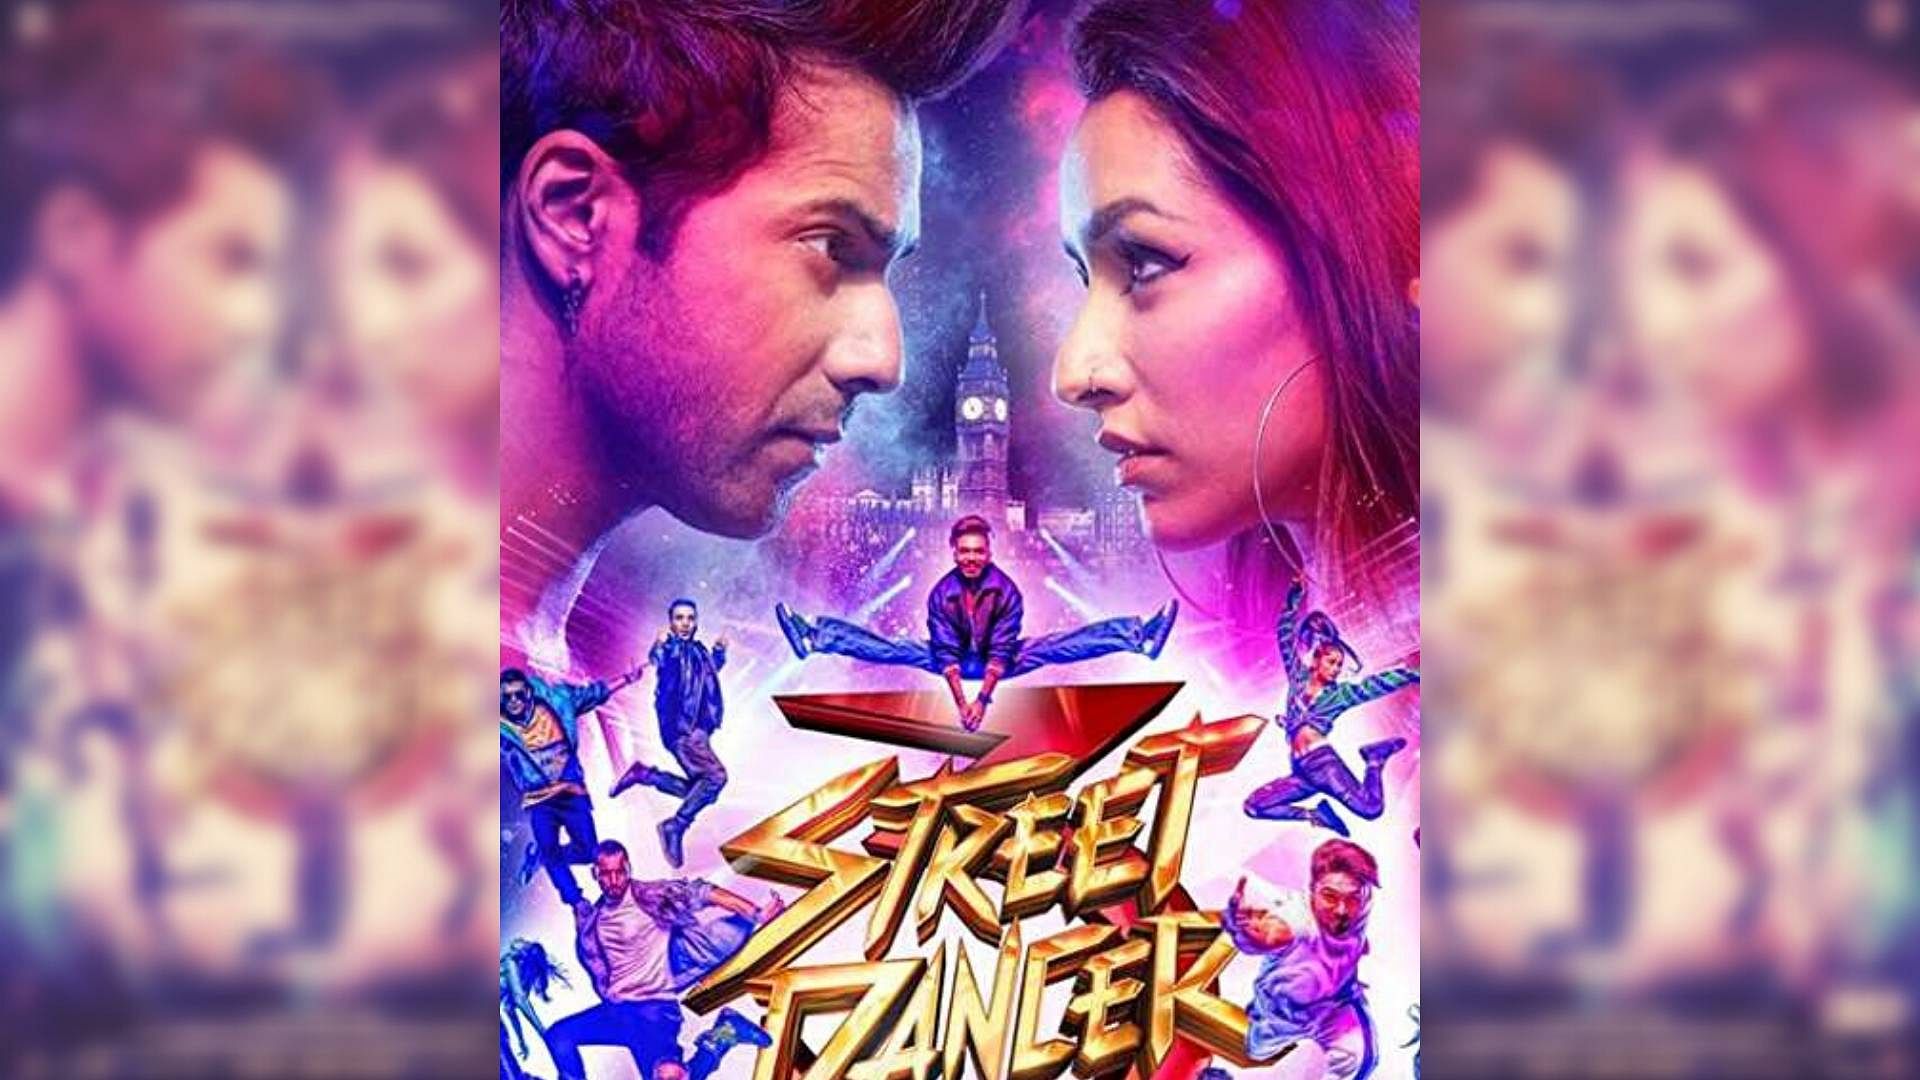 A poster for <i>Street Dancer 3D</i>.